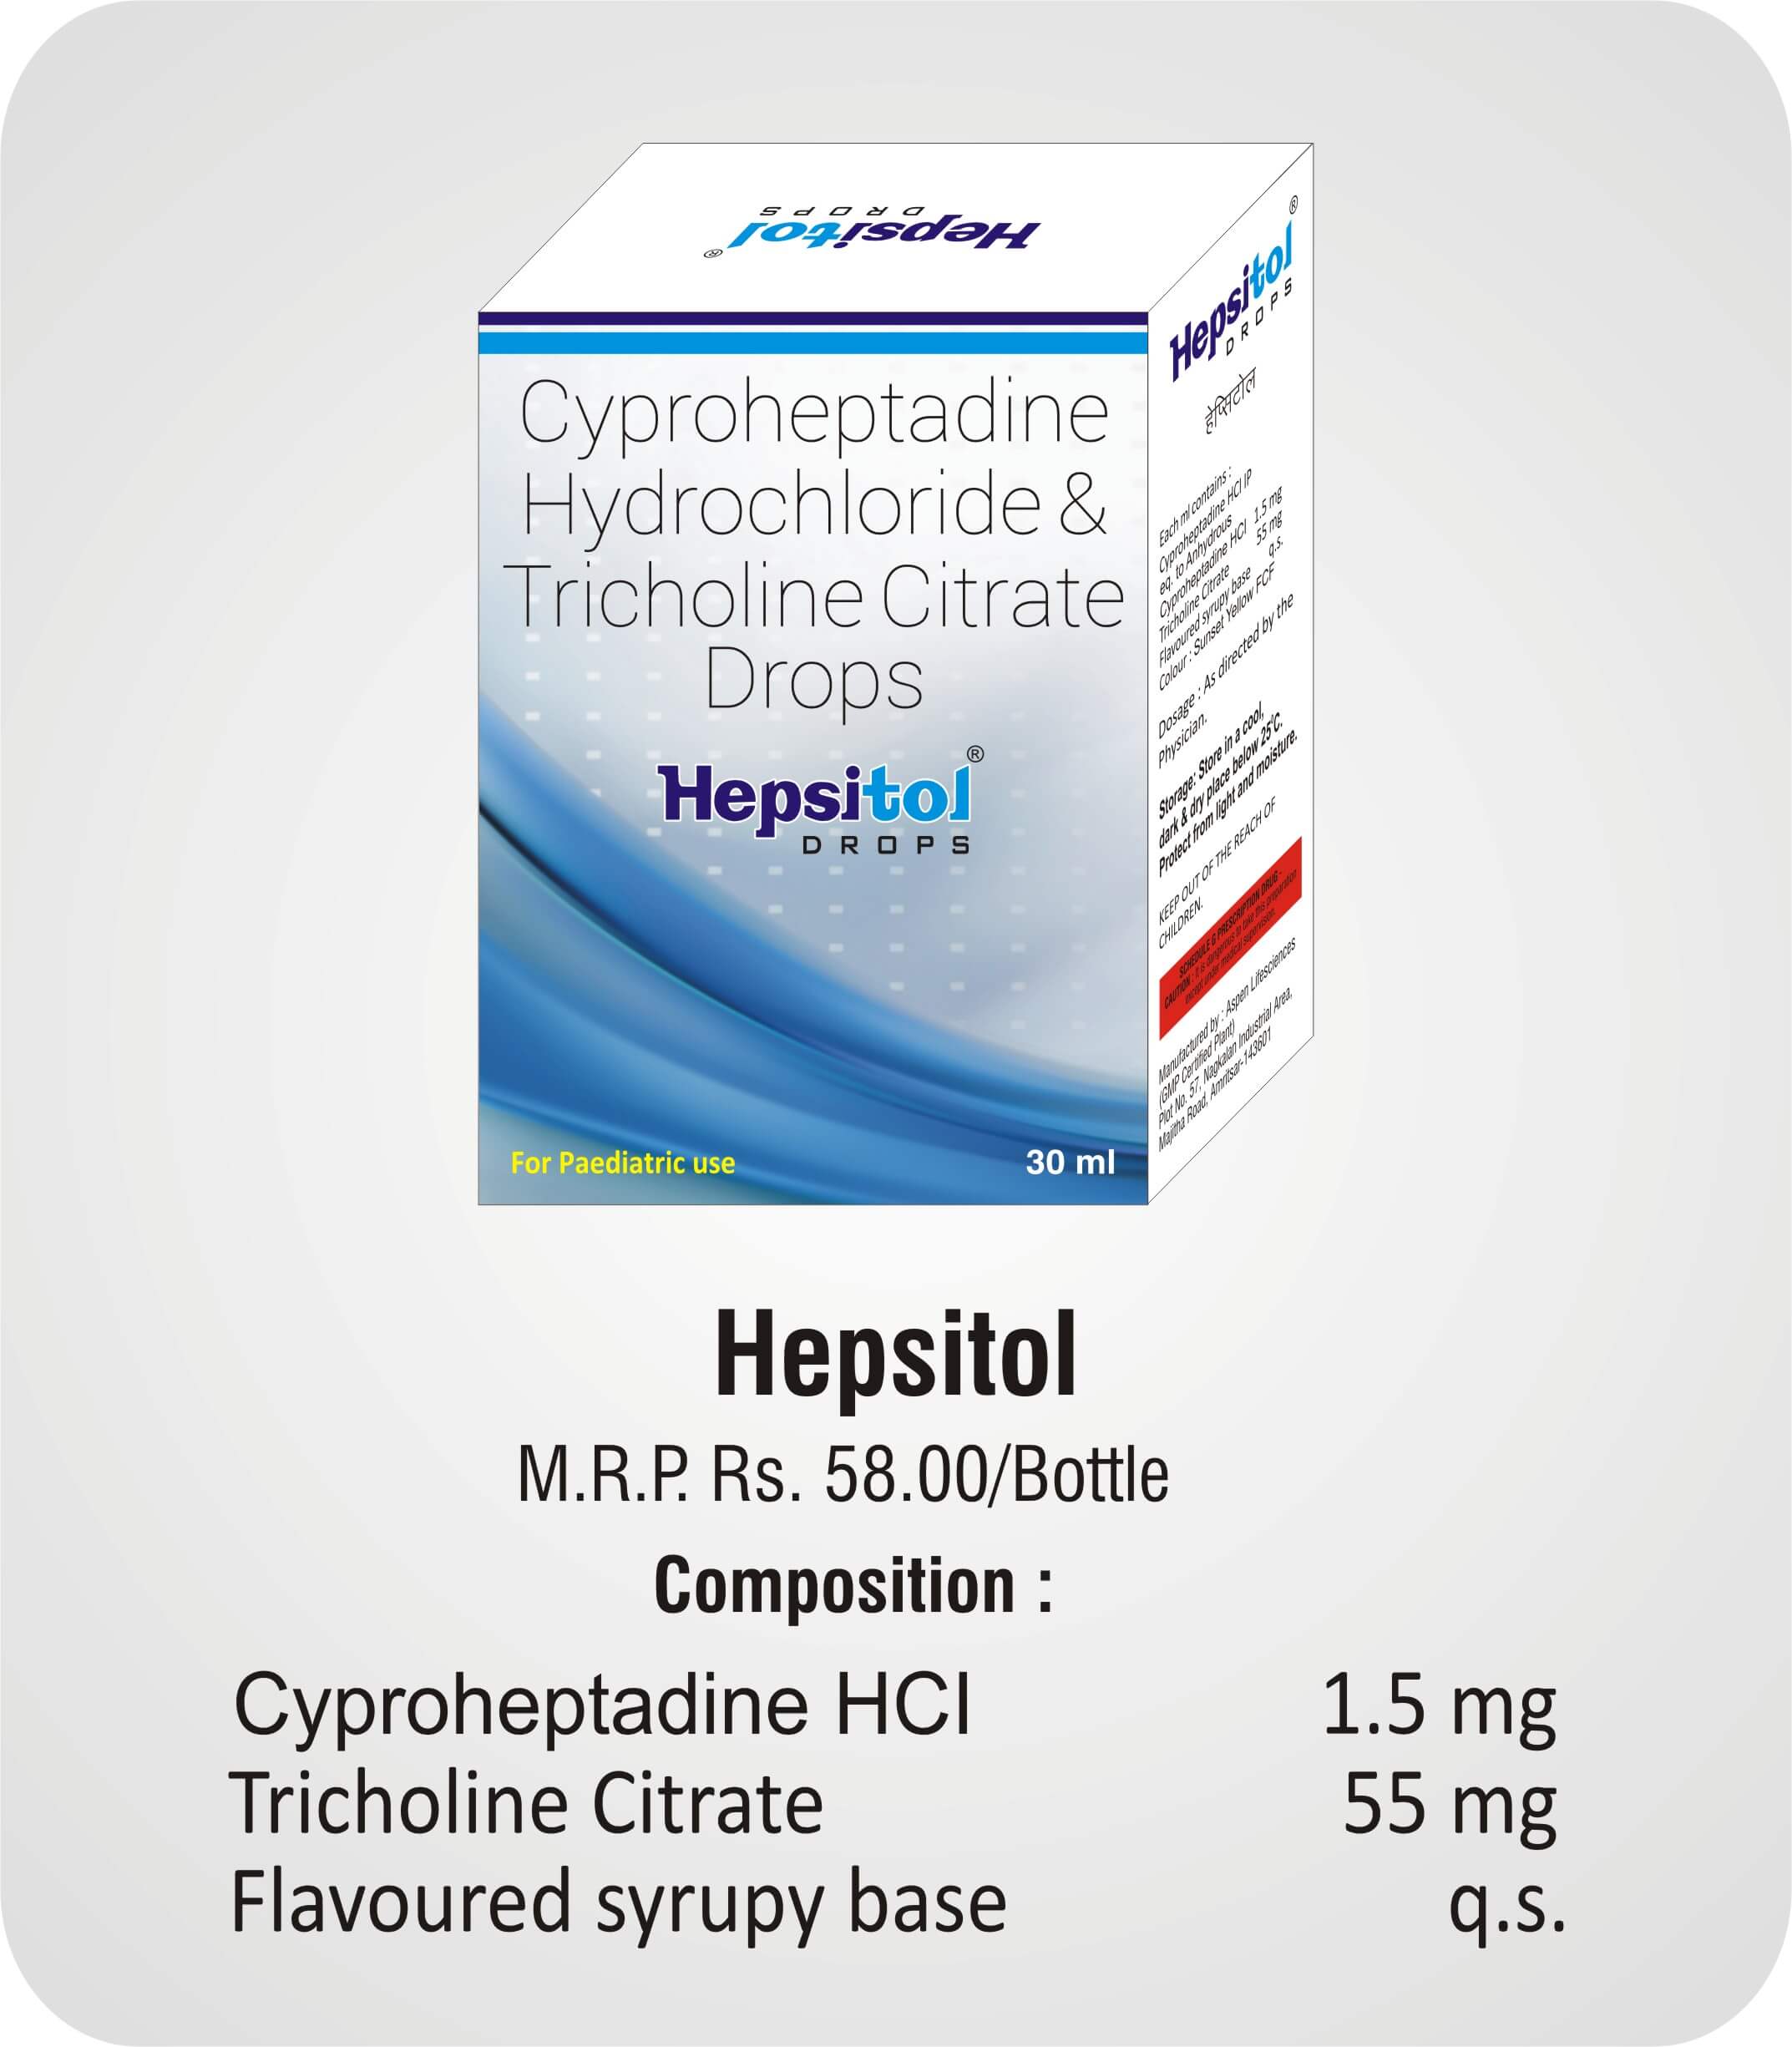 Hepsitol Drops